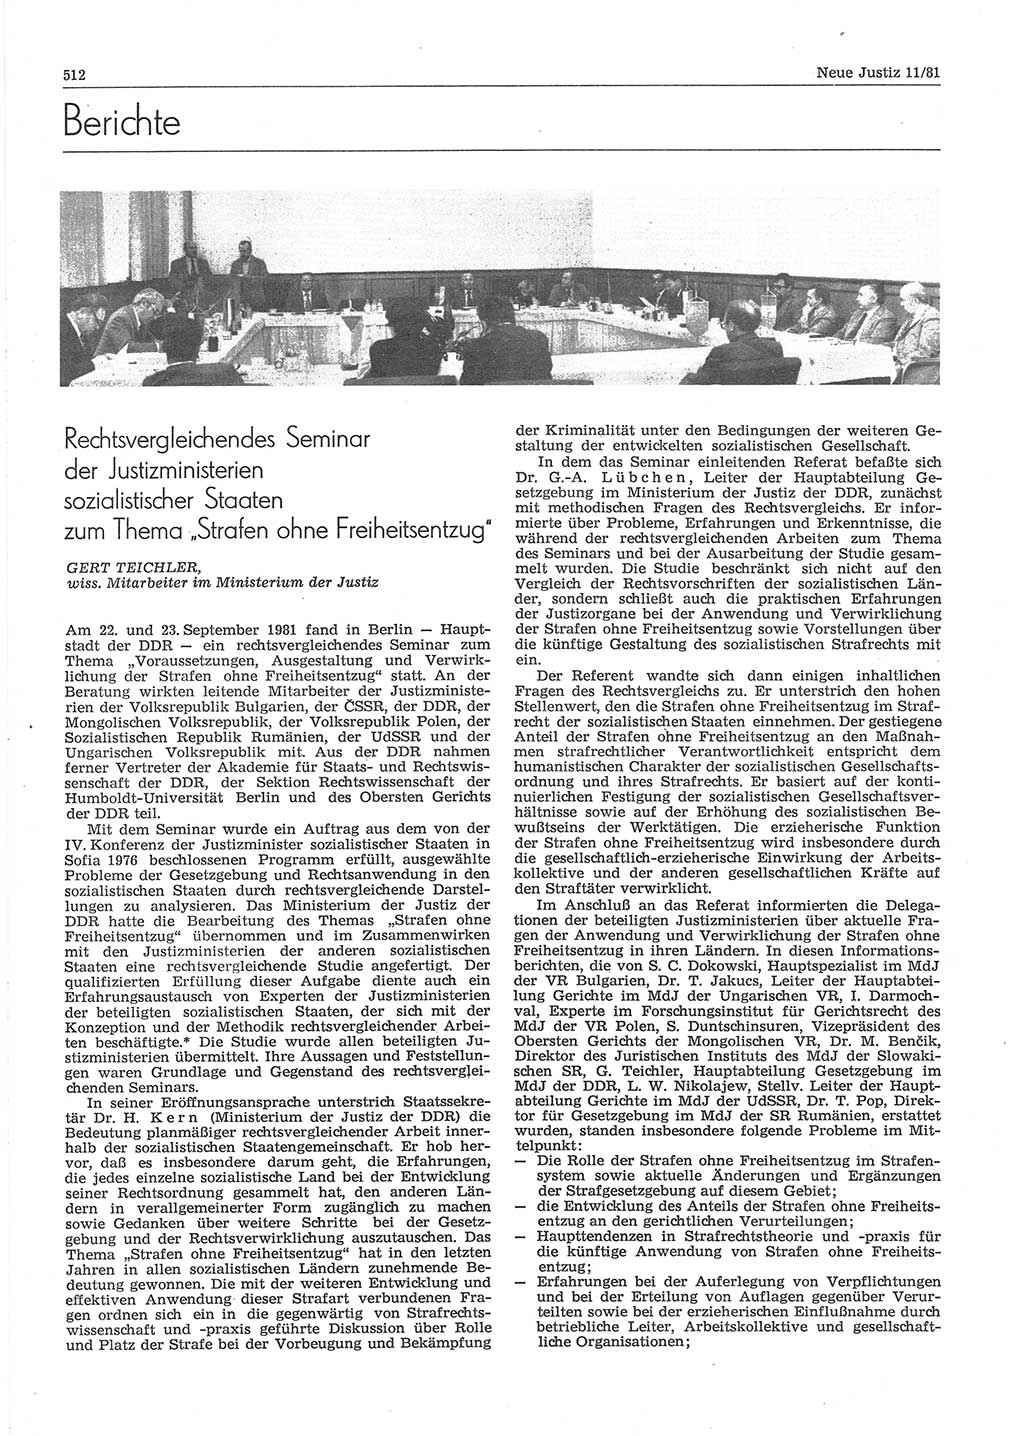 Neue Justiz (NJ), Zeitschrift für sozialistisches Recht und Gesetzlichkeit [Deutsche Demokratische Republik (DDR)], 35. Jahrgang 1981, Seite 512 (NJ DDR 1981, S. 512)